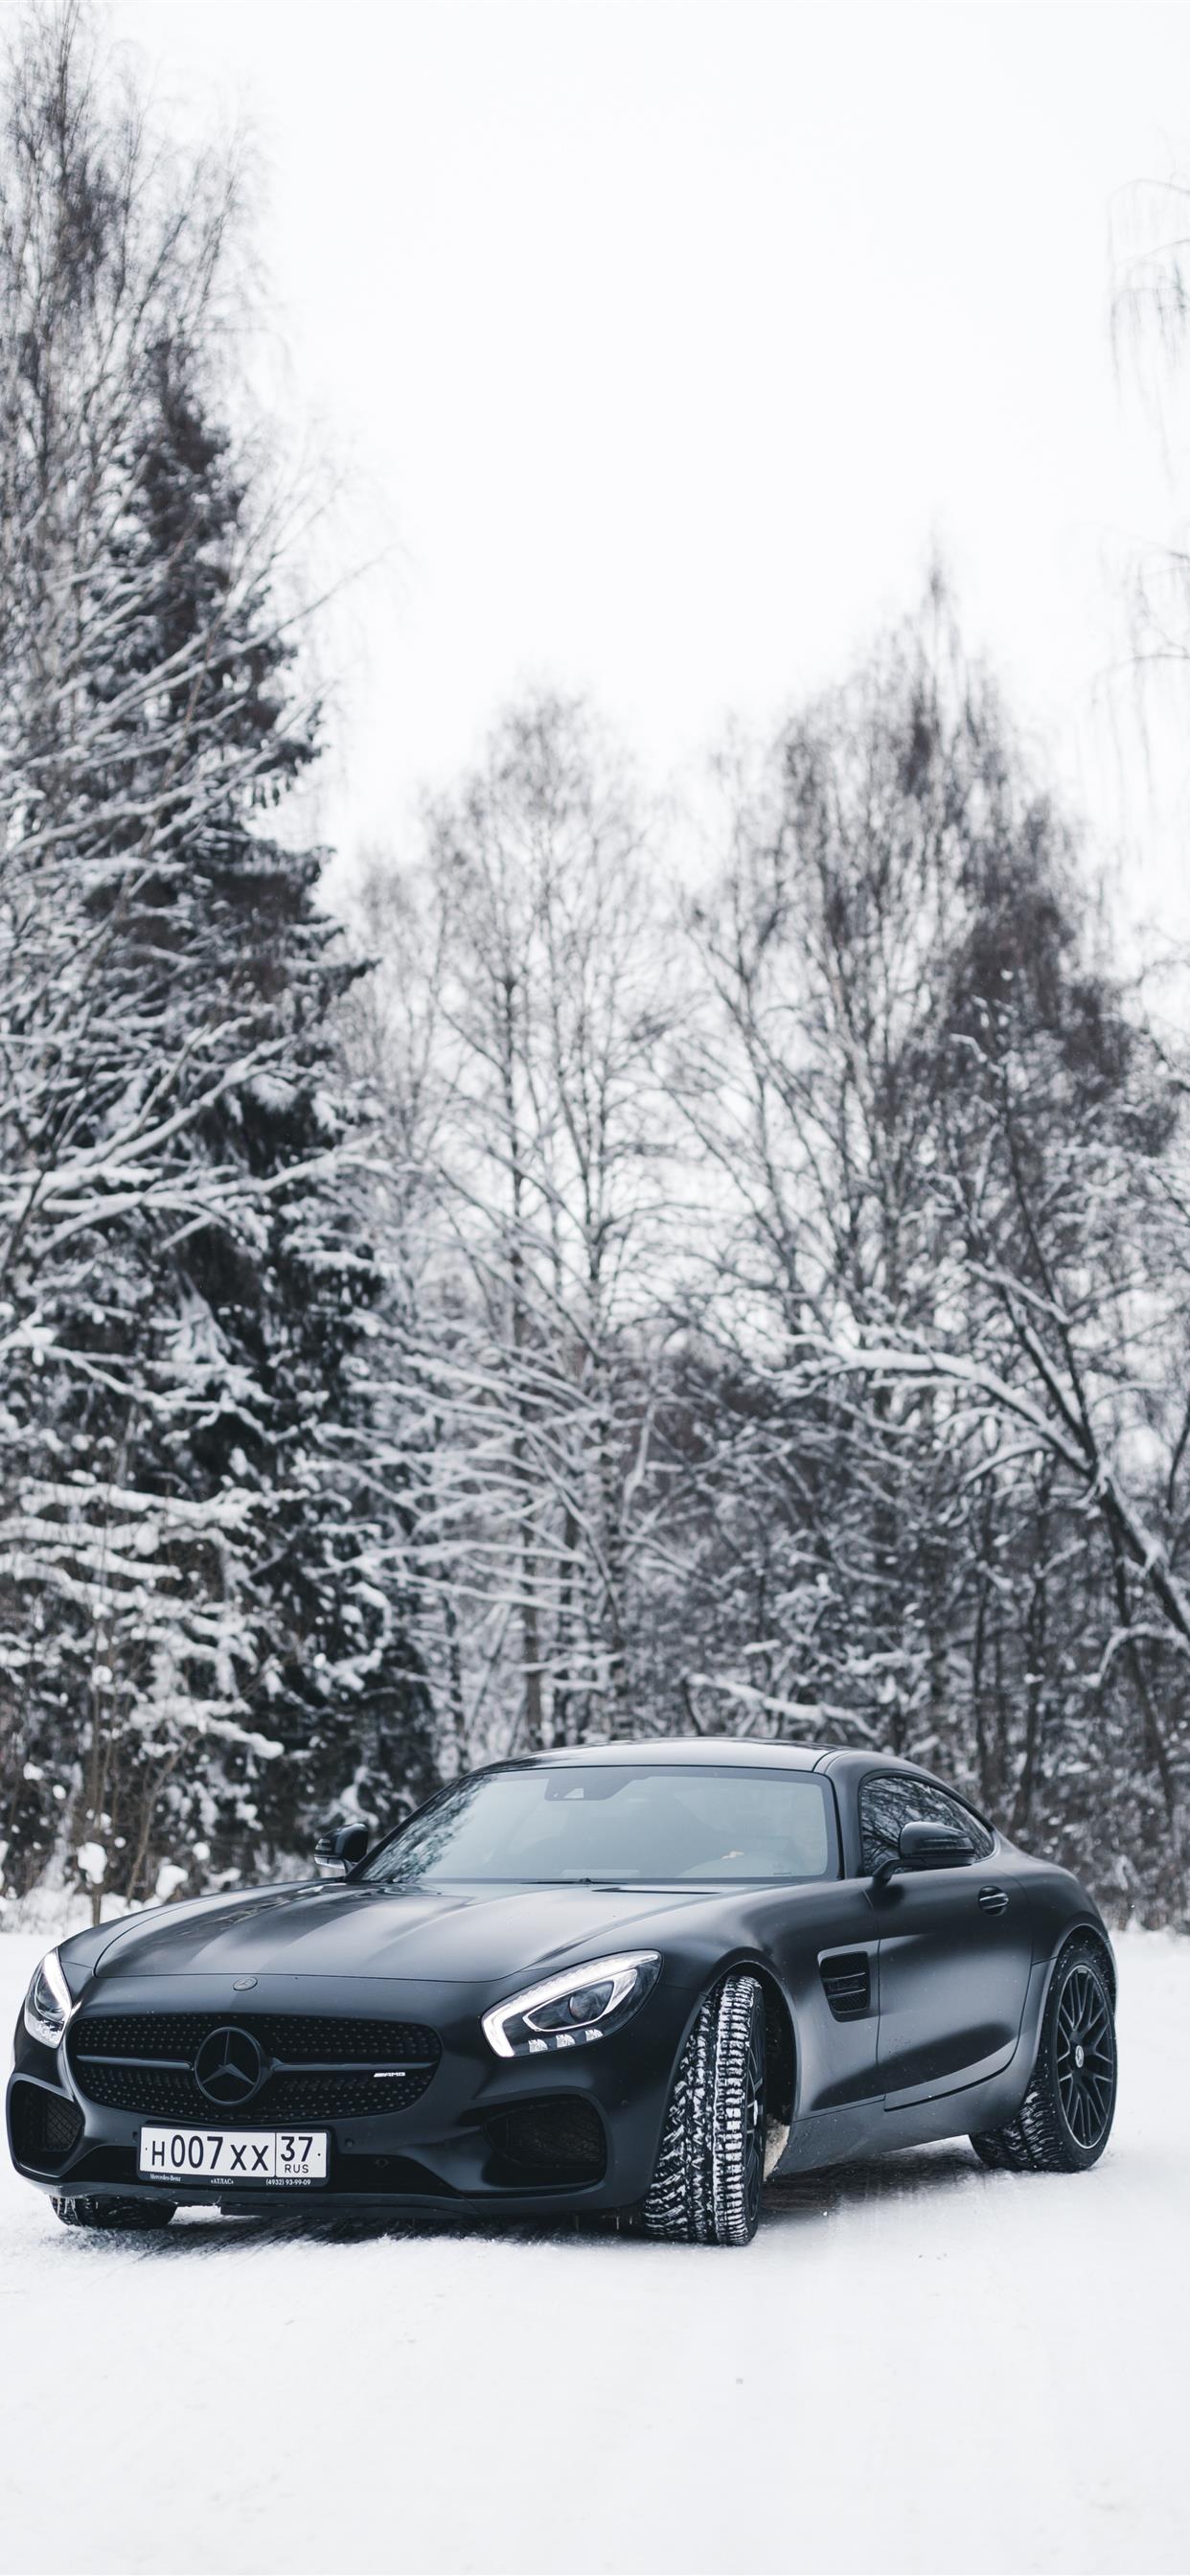 停在雪地的奔驰AMG双门跑车